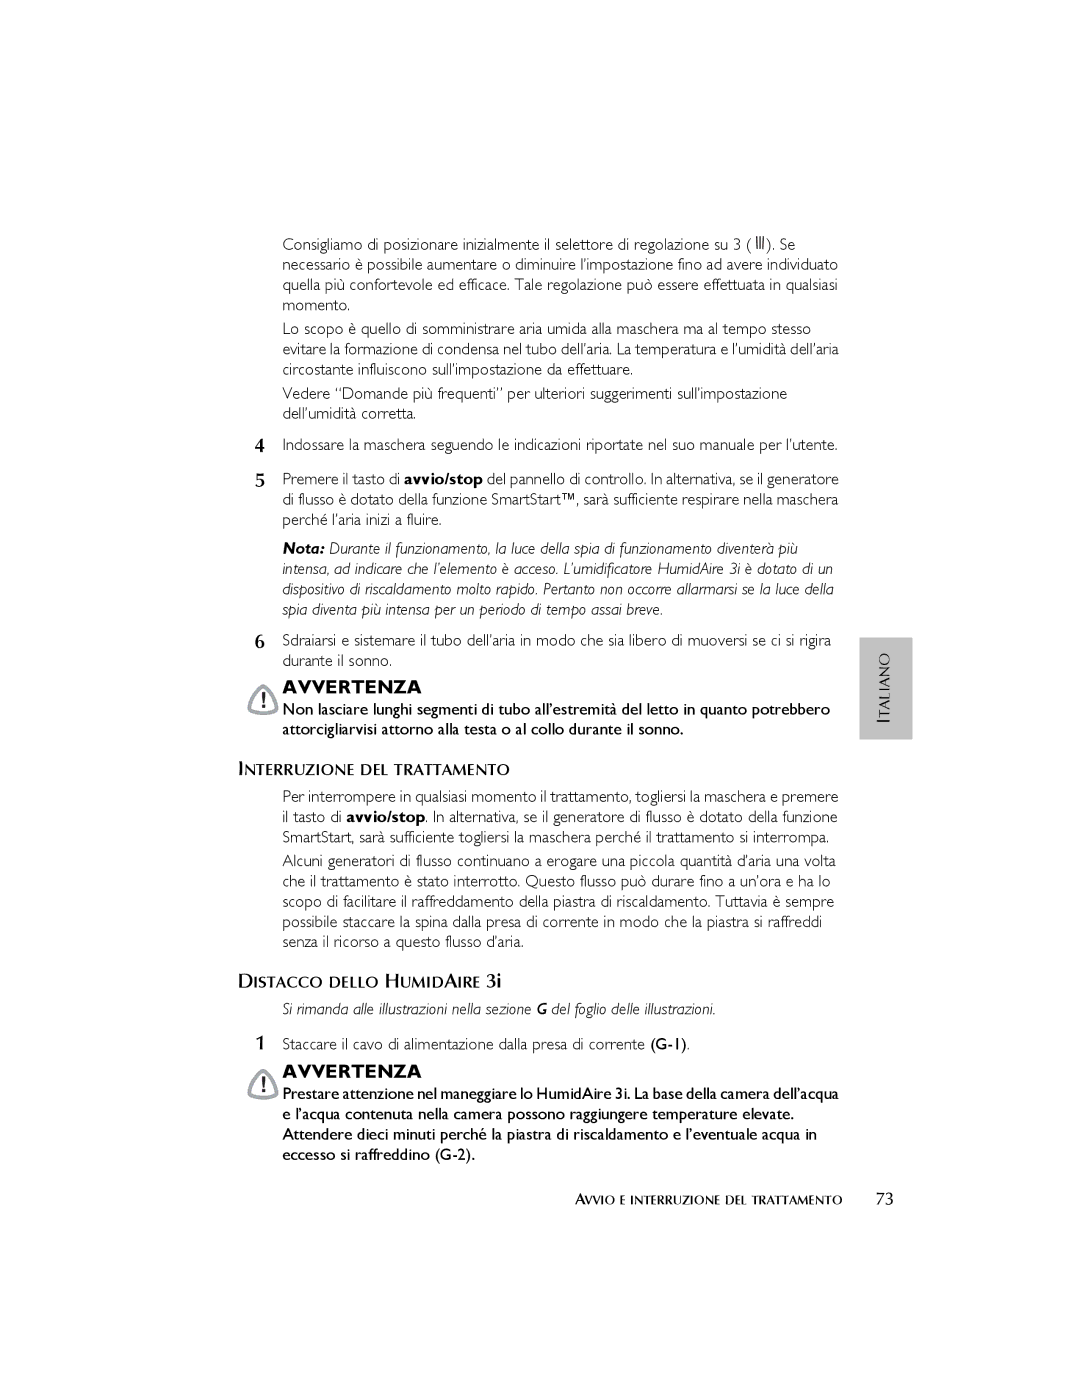 ResMed 3I user manual Interruzione DEL Trattamento, Distacco Dello Humidaire 